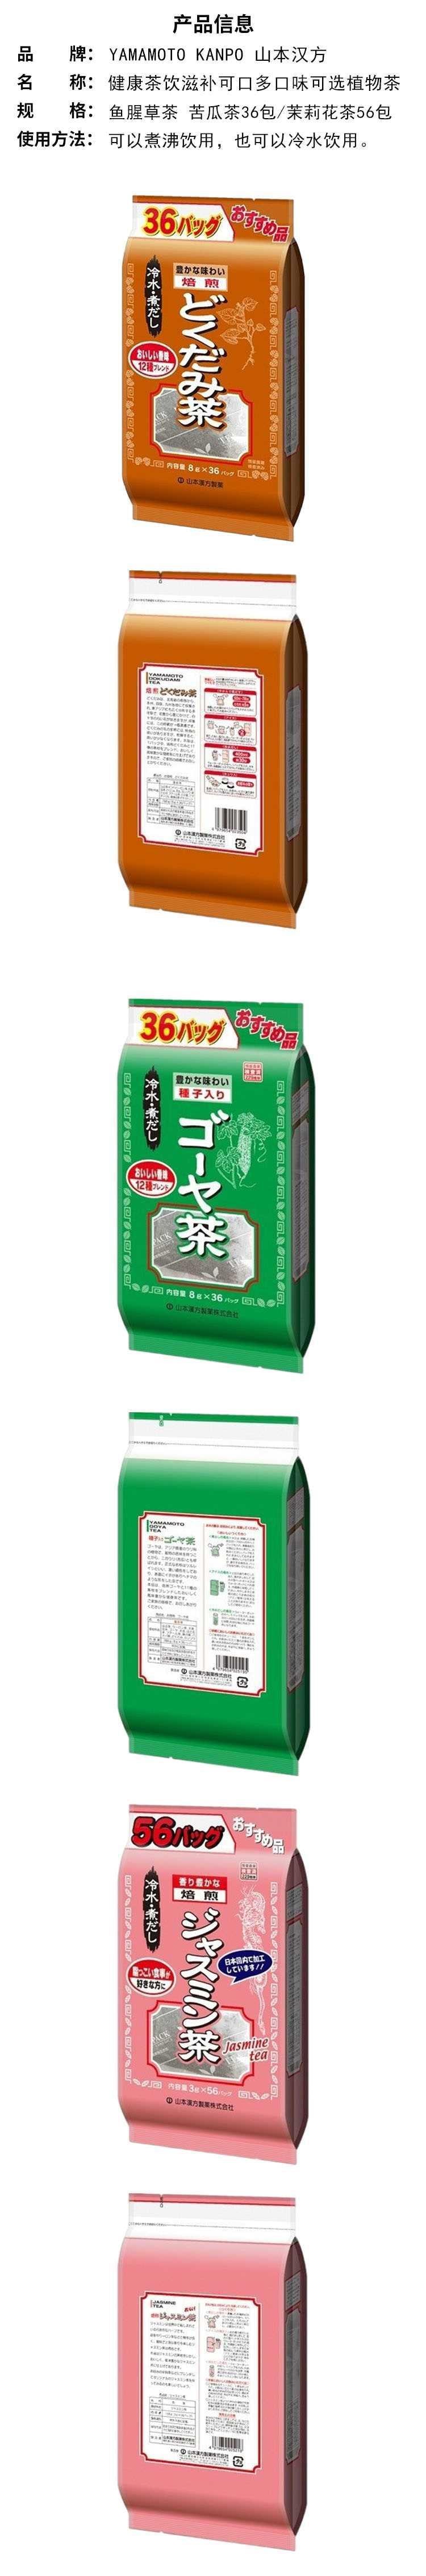 【日本直效郵件】YAMAMOTO山本漢方製藥 超值魚腥草茶 8g*36包